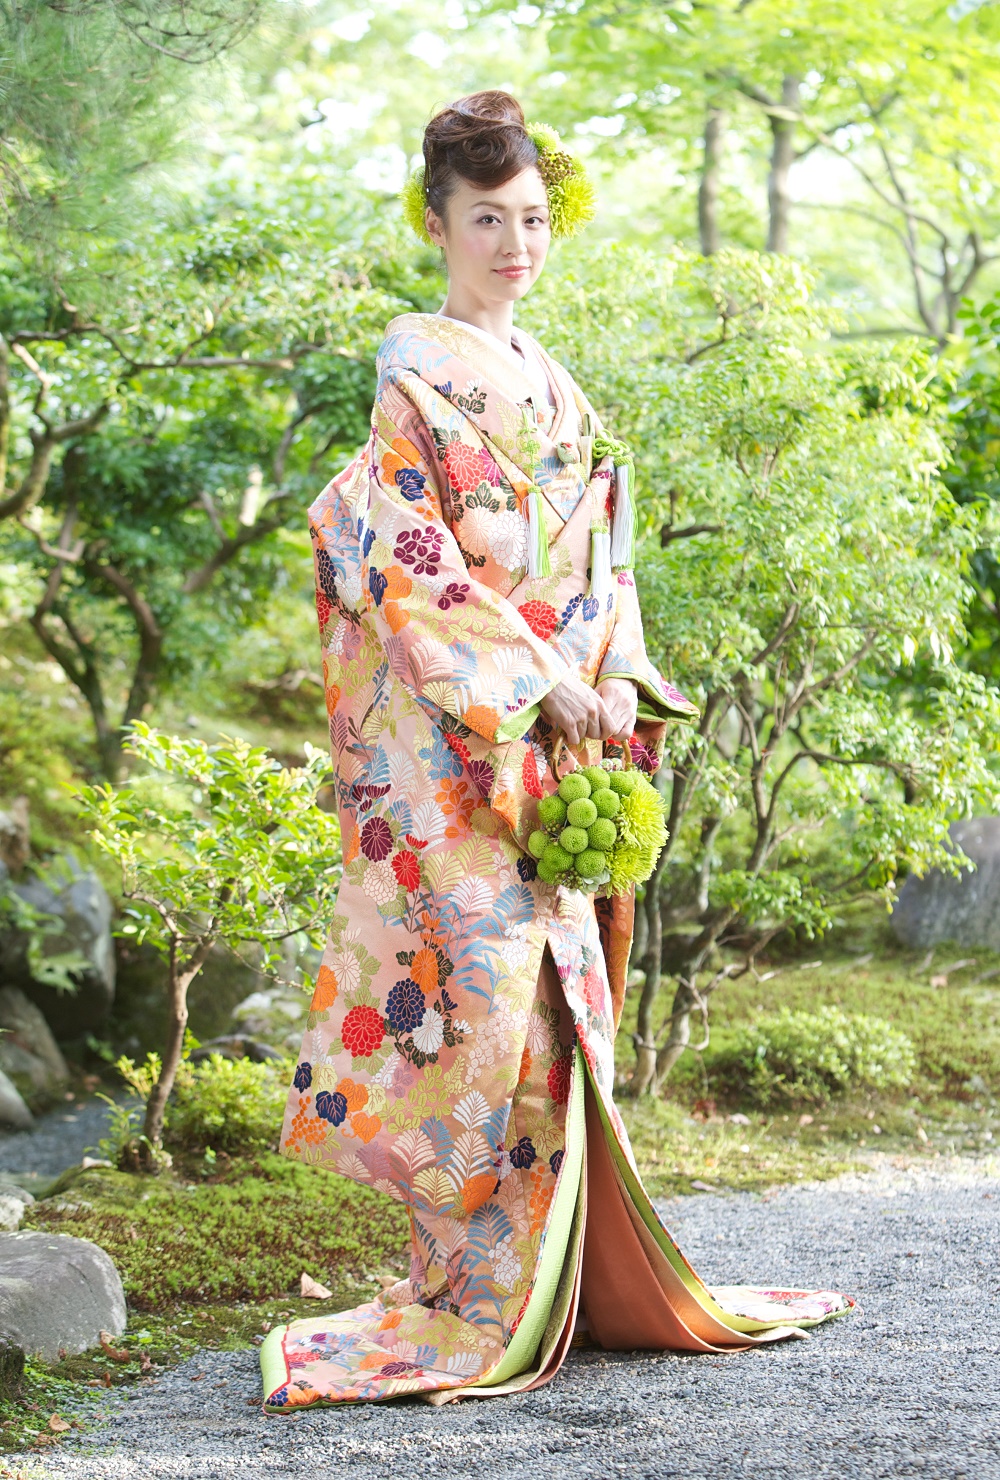 職人の技術が詰まった豪華な唐織の色打掛5選 | 京都/タガヤ和婚礼